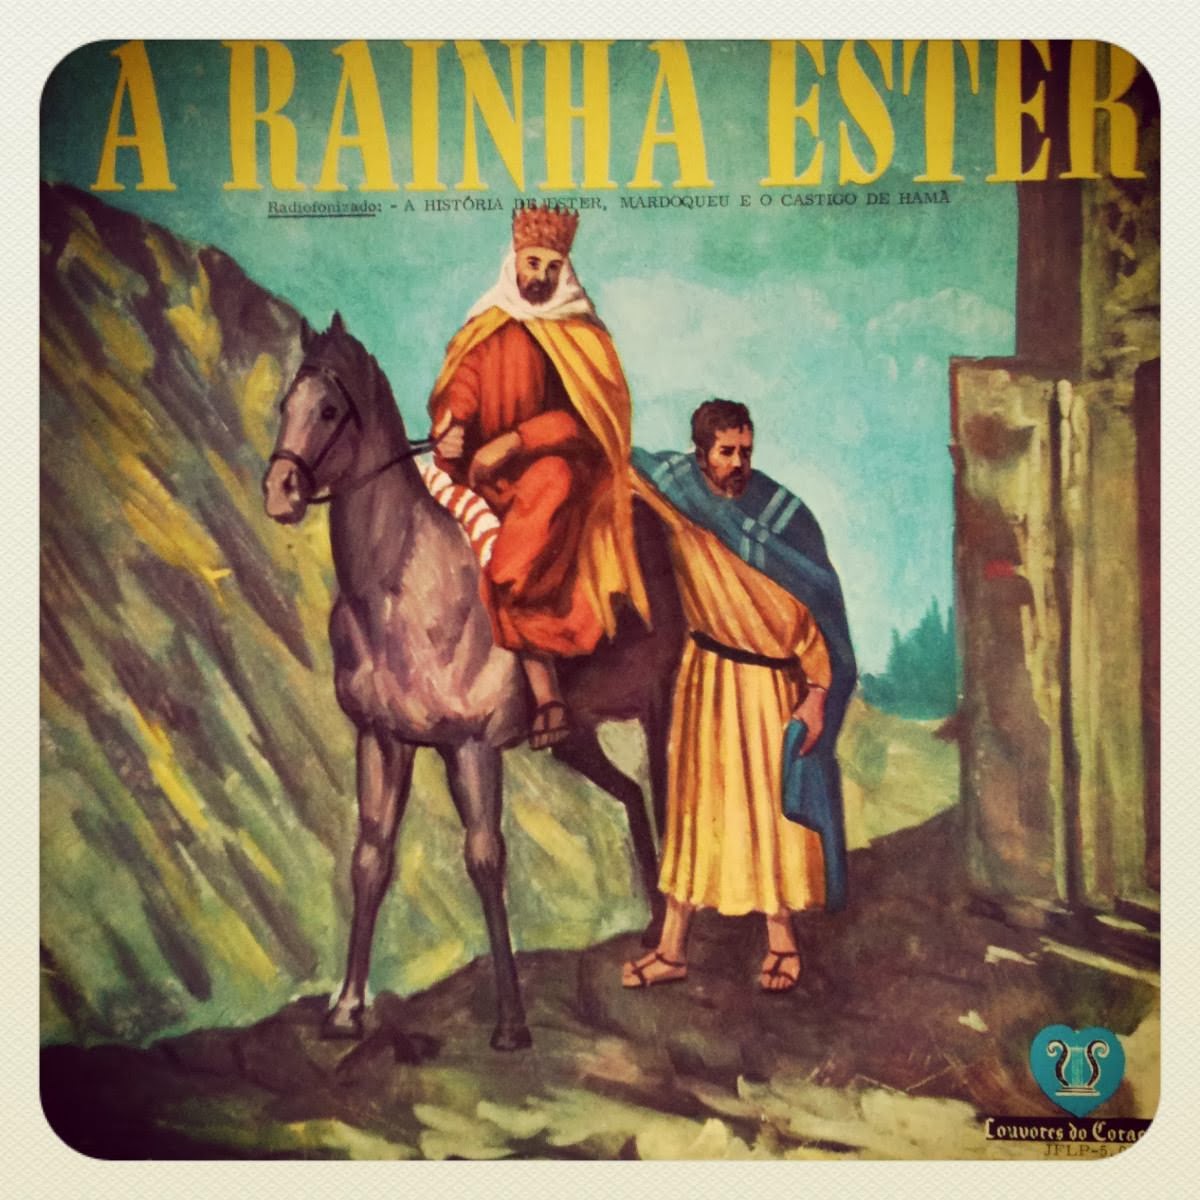 A Rainha Ester - Radiofonizado - Raro 1969